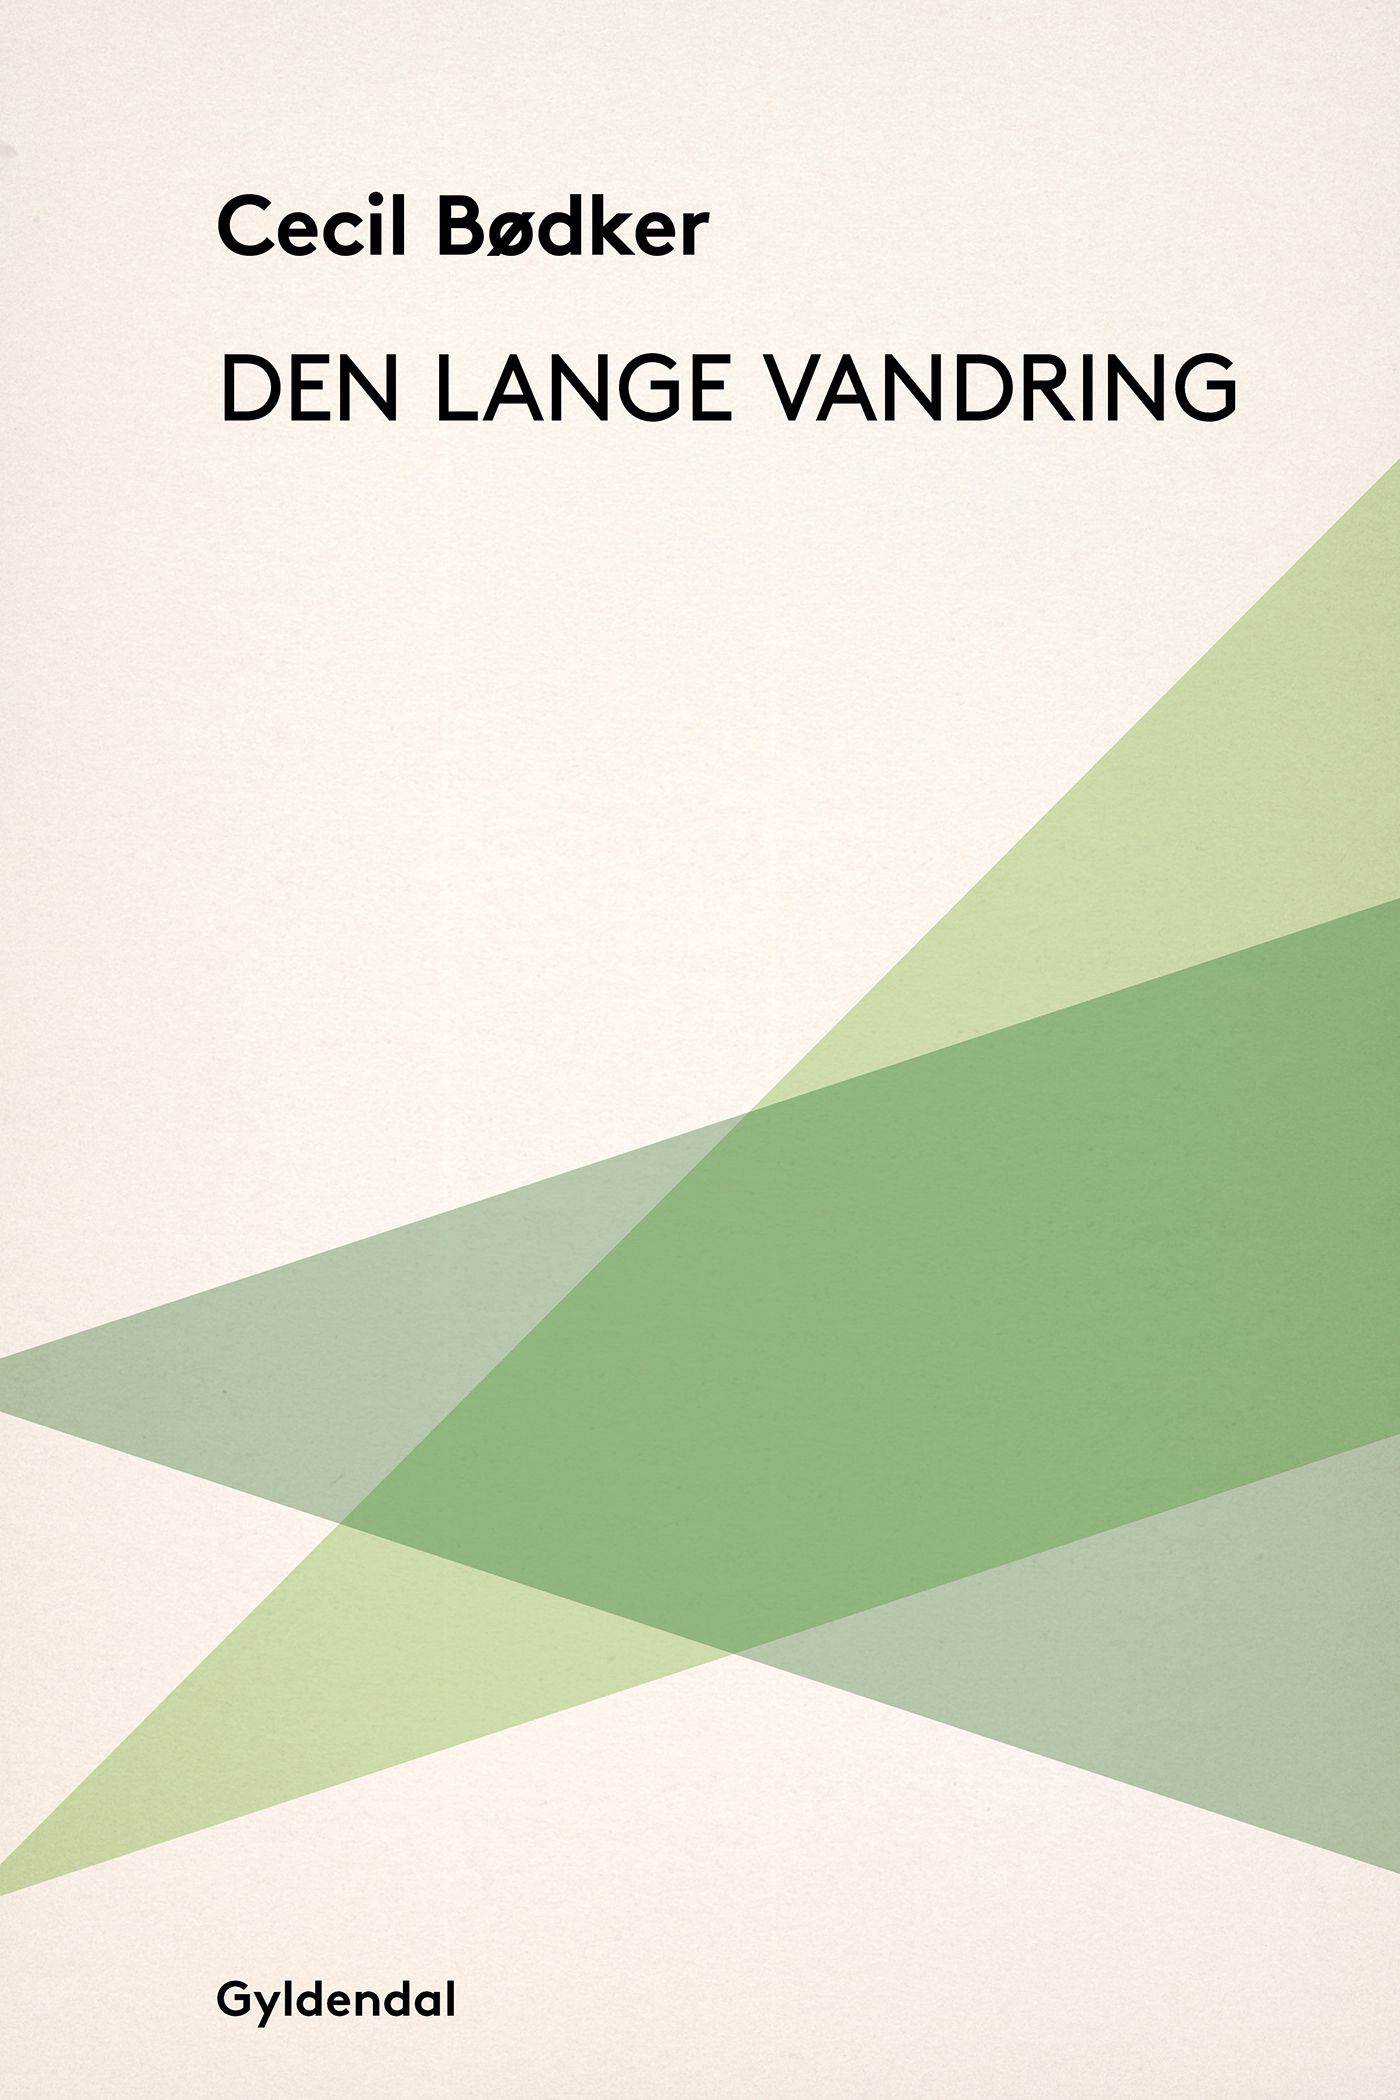 Den lange vandring, e-bok av Cecil Bødker